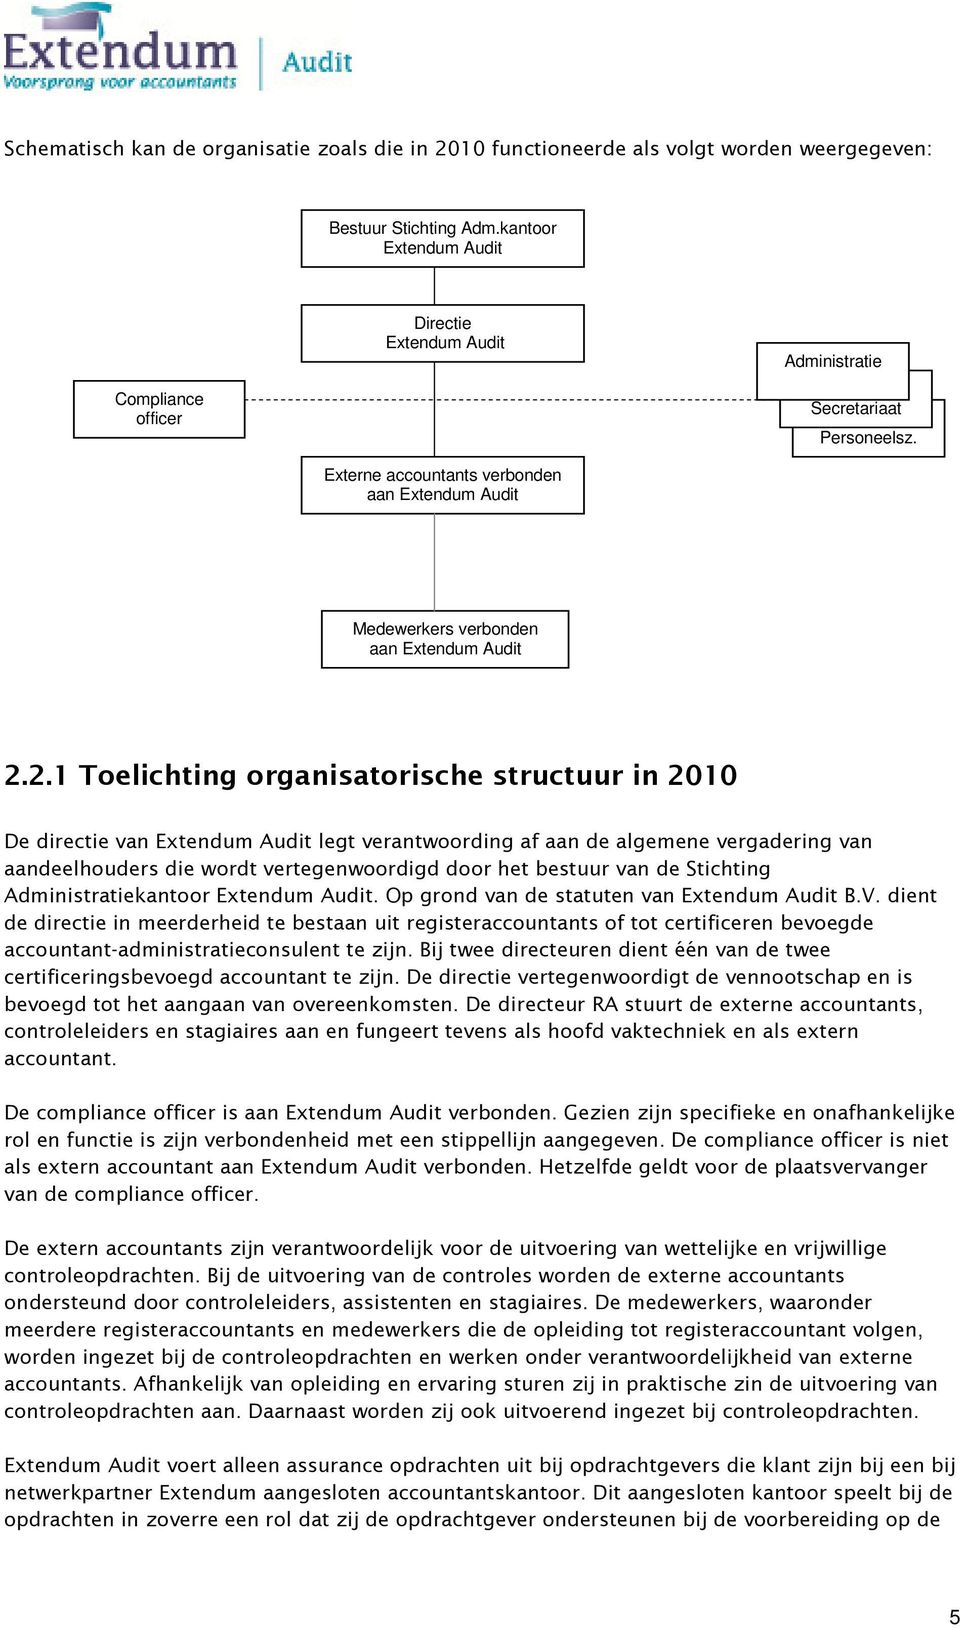 2.1 Toelichting organisatorische structuur in 2010 De directie van Extendum Audit legt verantwoording af aan de algemene vergadering van aandeelhouders die wordt vertegenwoordigd door het bestuur van